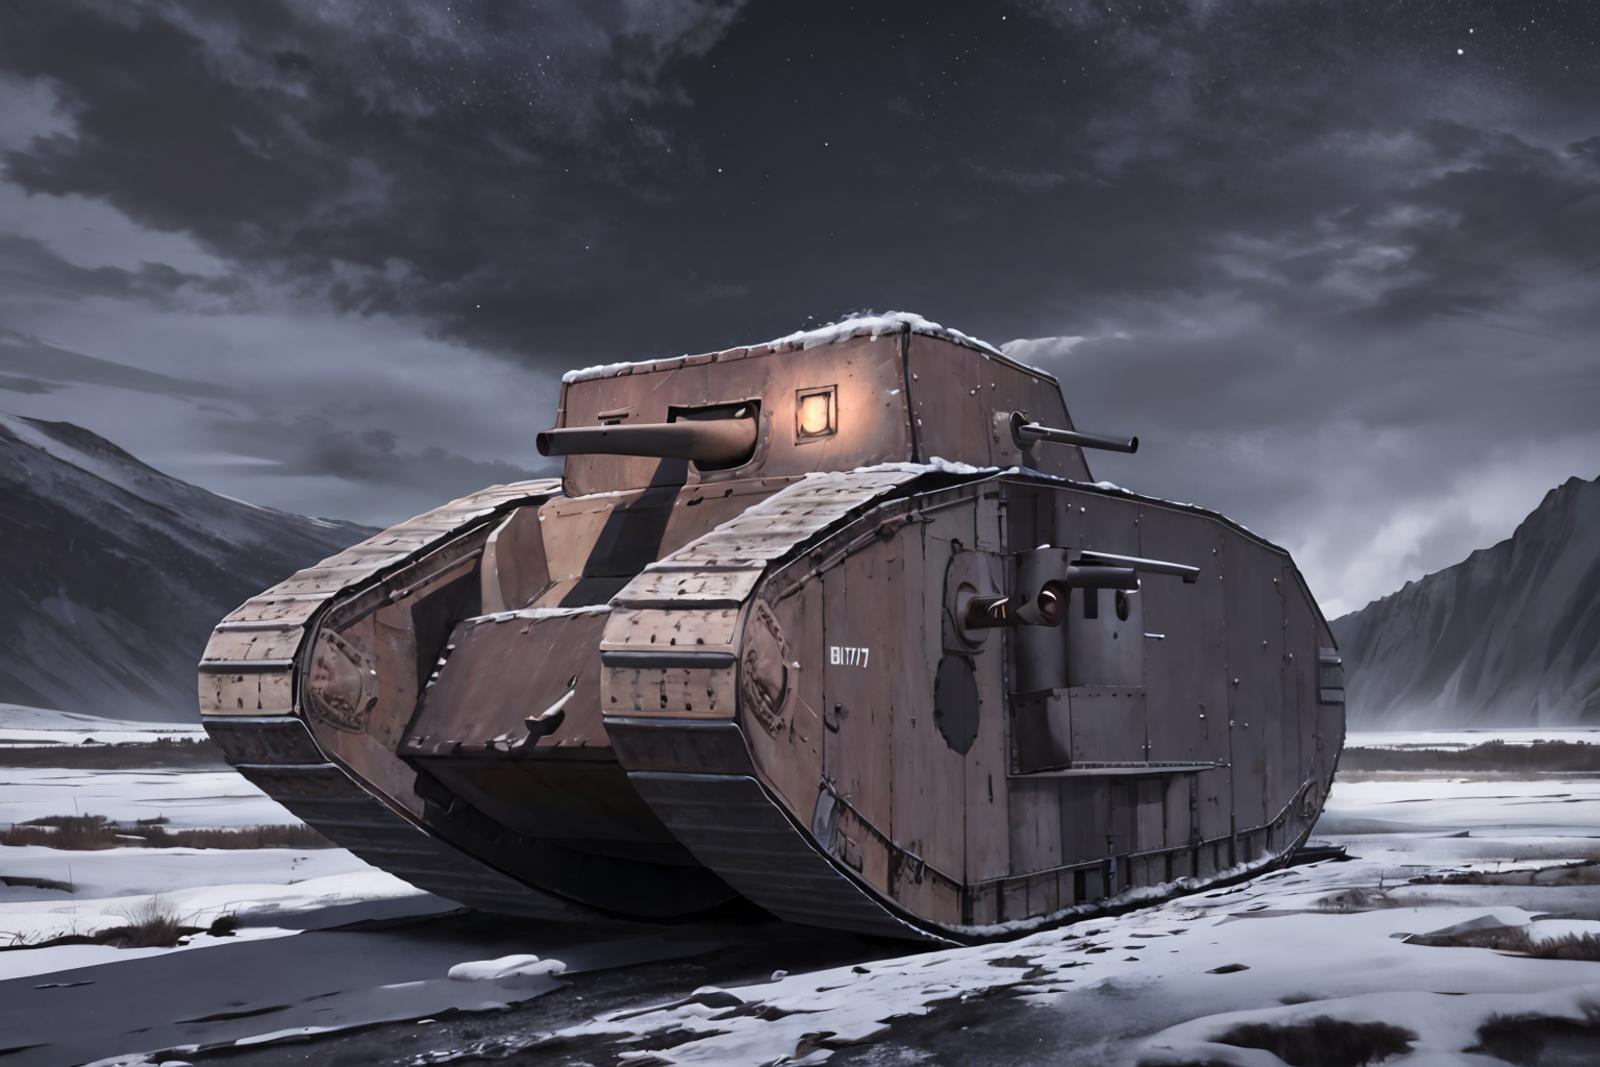 WW1 - British Mark IV Tank image by richyrich515